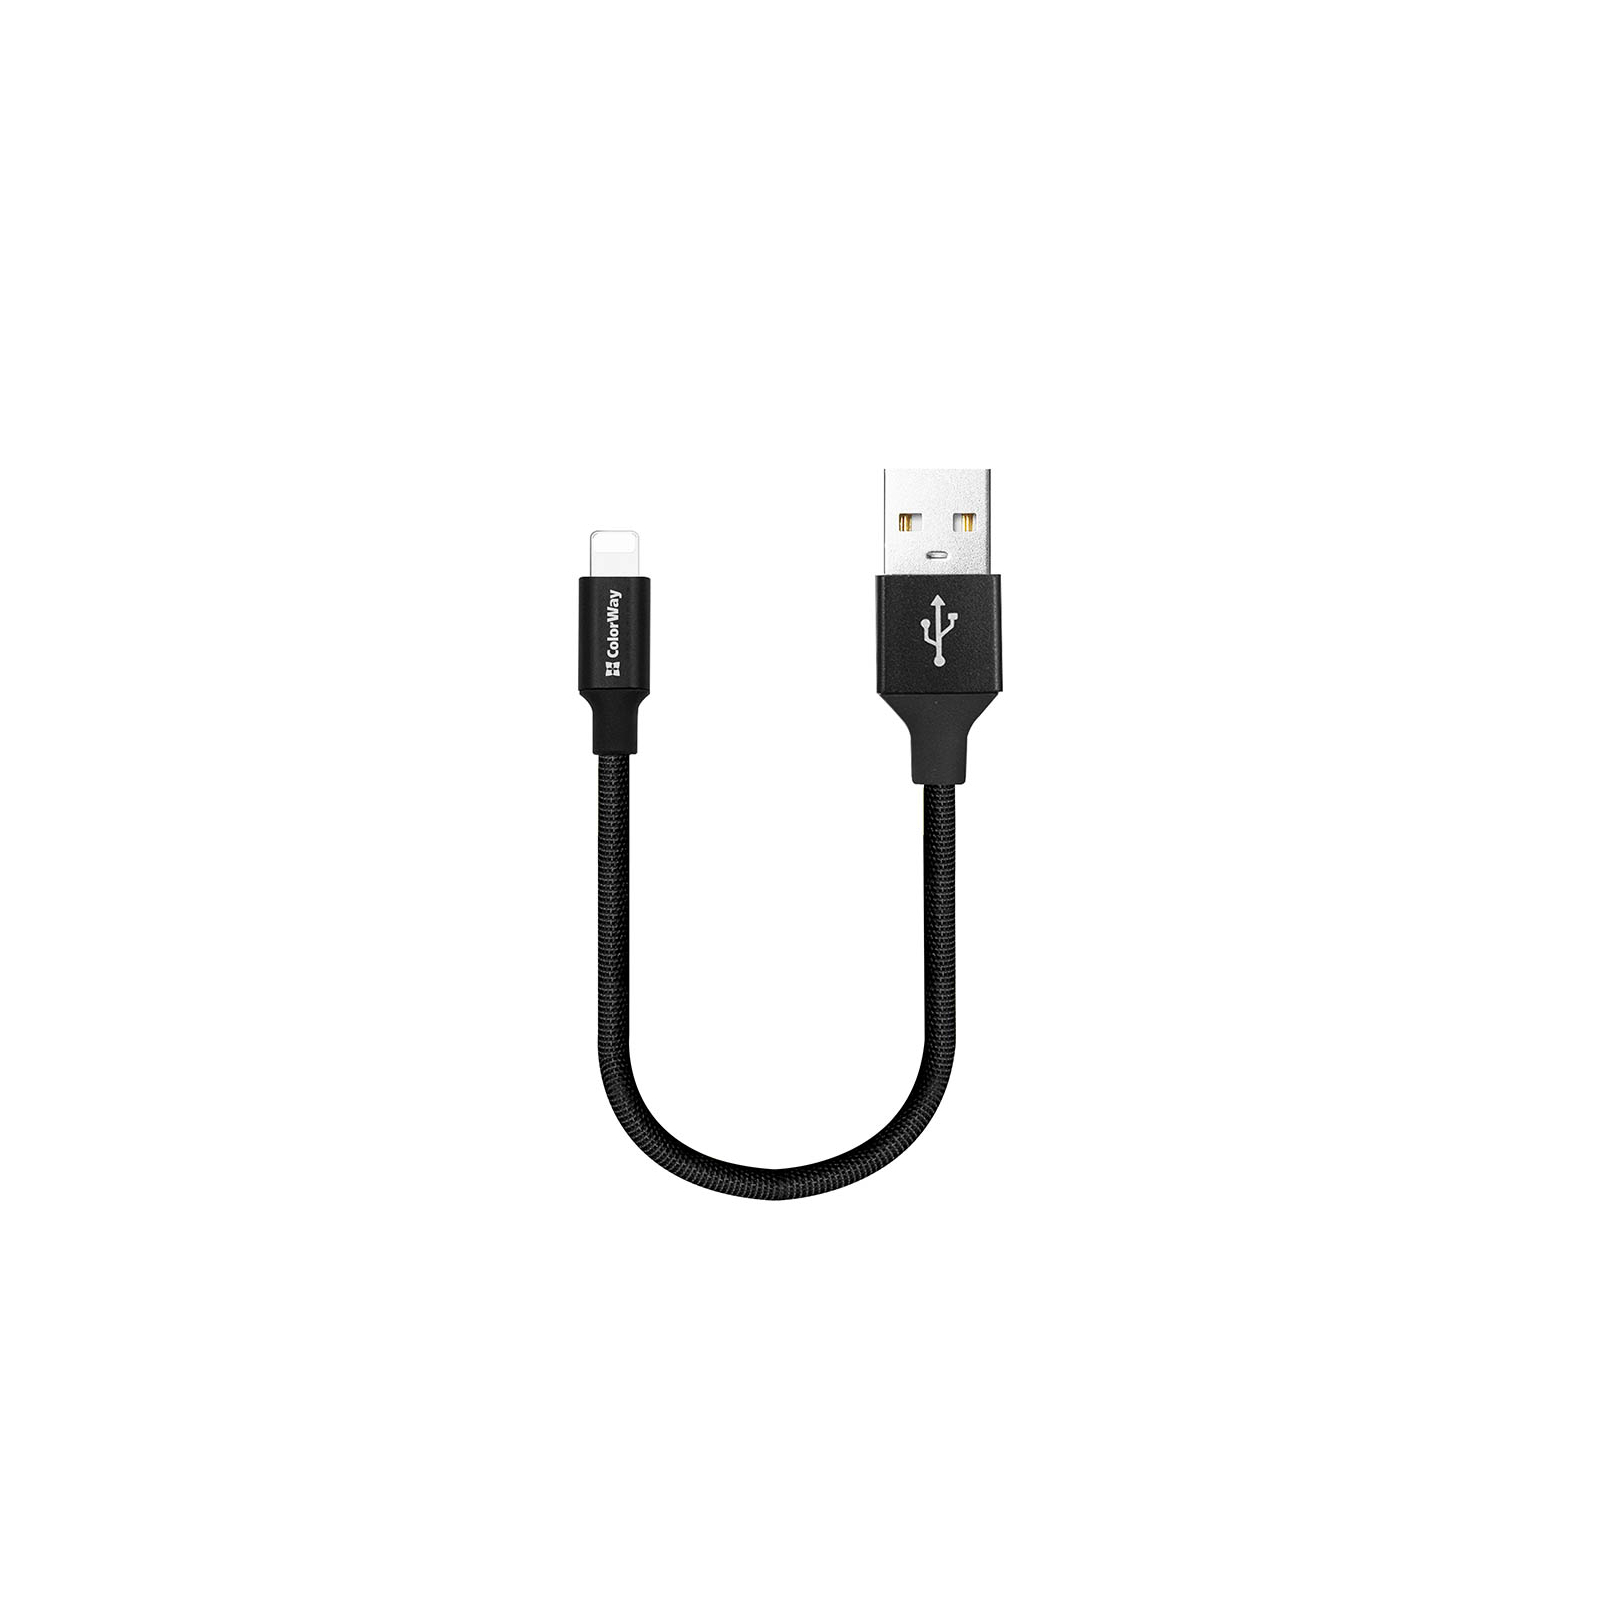 Дата кабель USB 2.0 AM to Lightning 0.25m black ColorWay (CW-CBUL048-BK) изображение 2